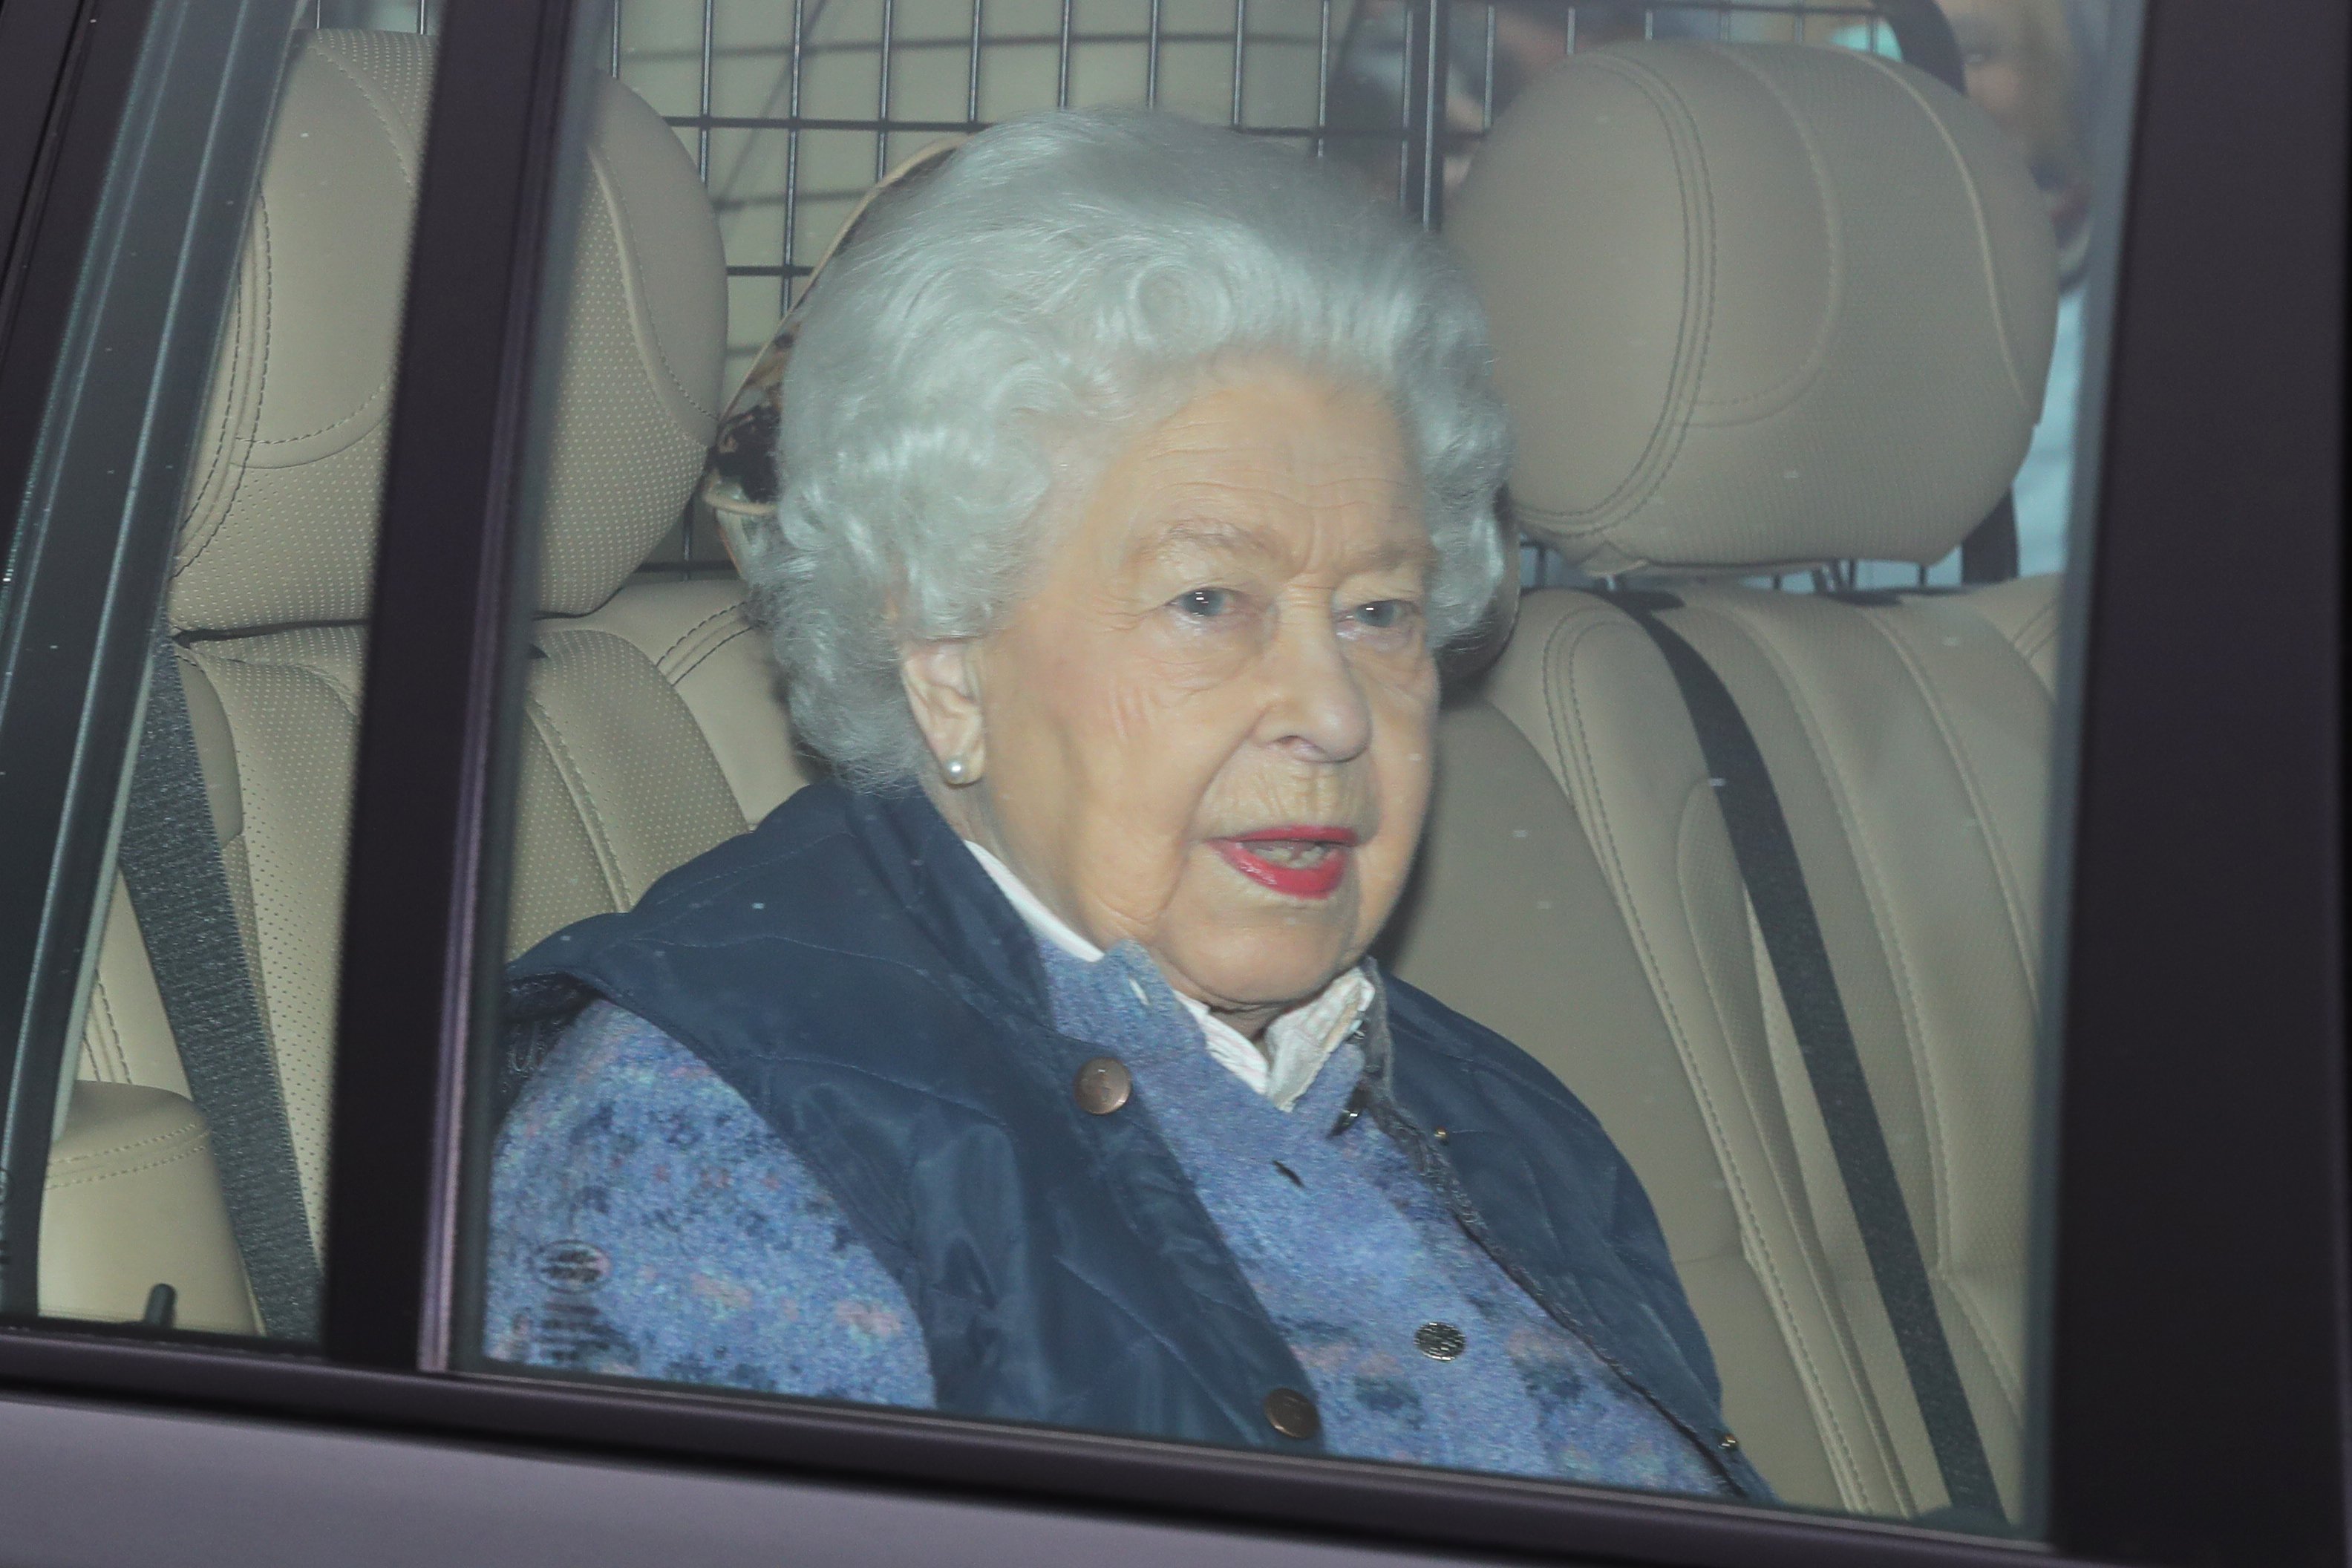 La reina Elizabeth II abandona el Palacio de Buckingham, Londres, para ir al Castillo de Windsor a distanciarse socialmente en medio de la pandemia de coronavirus. | Foto: Getty Images